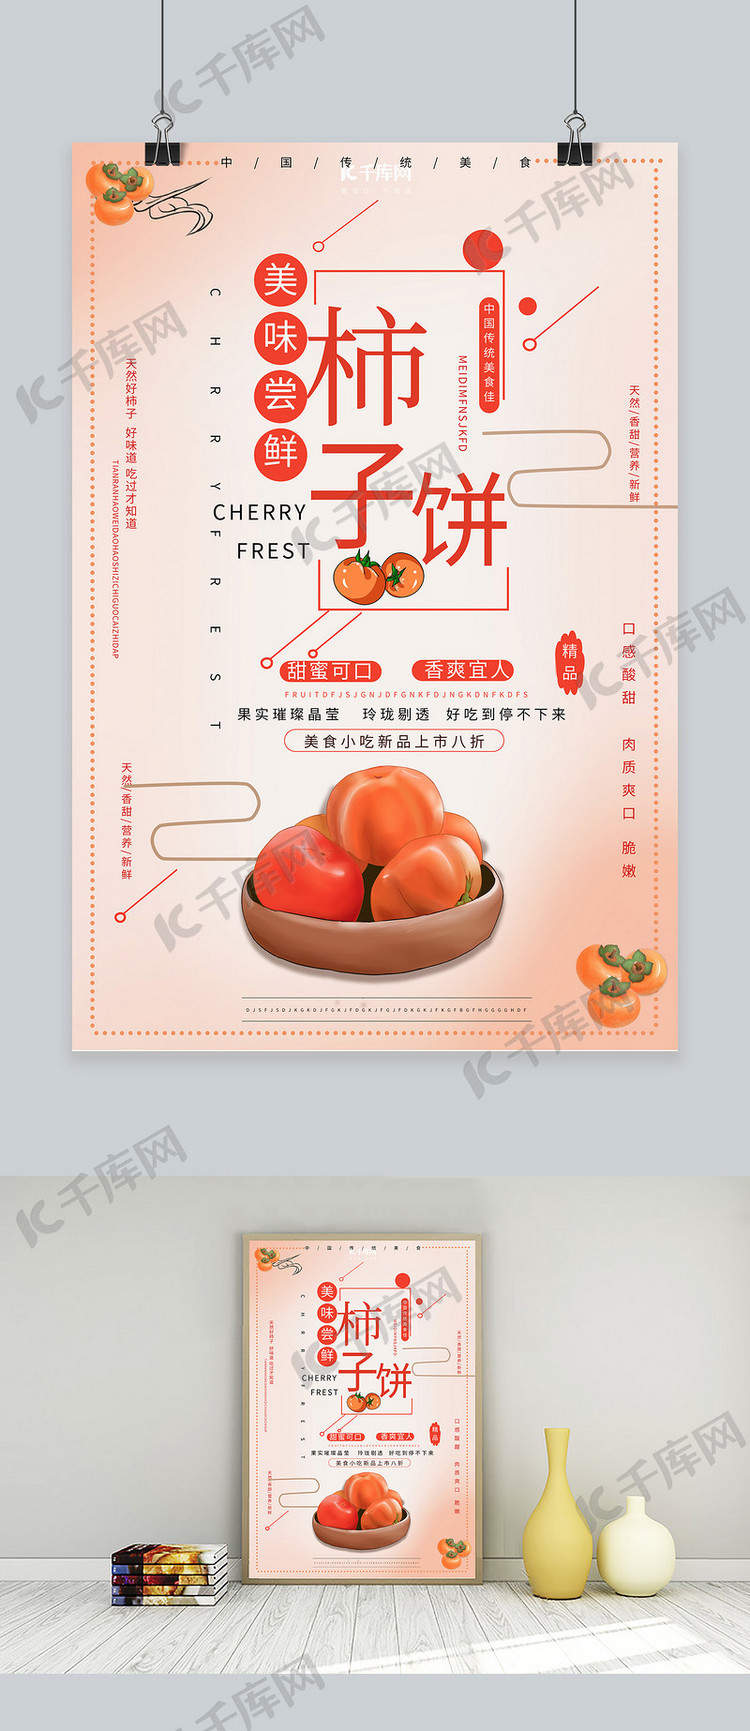 新鲜柿子产品宣传海报